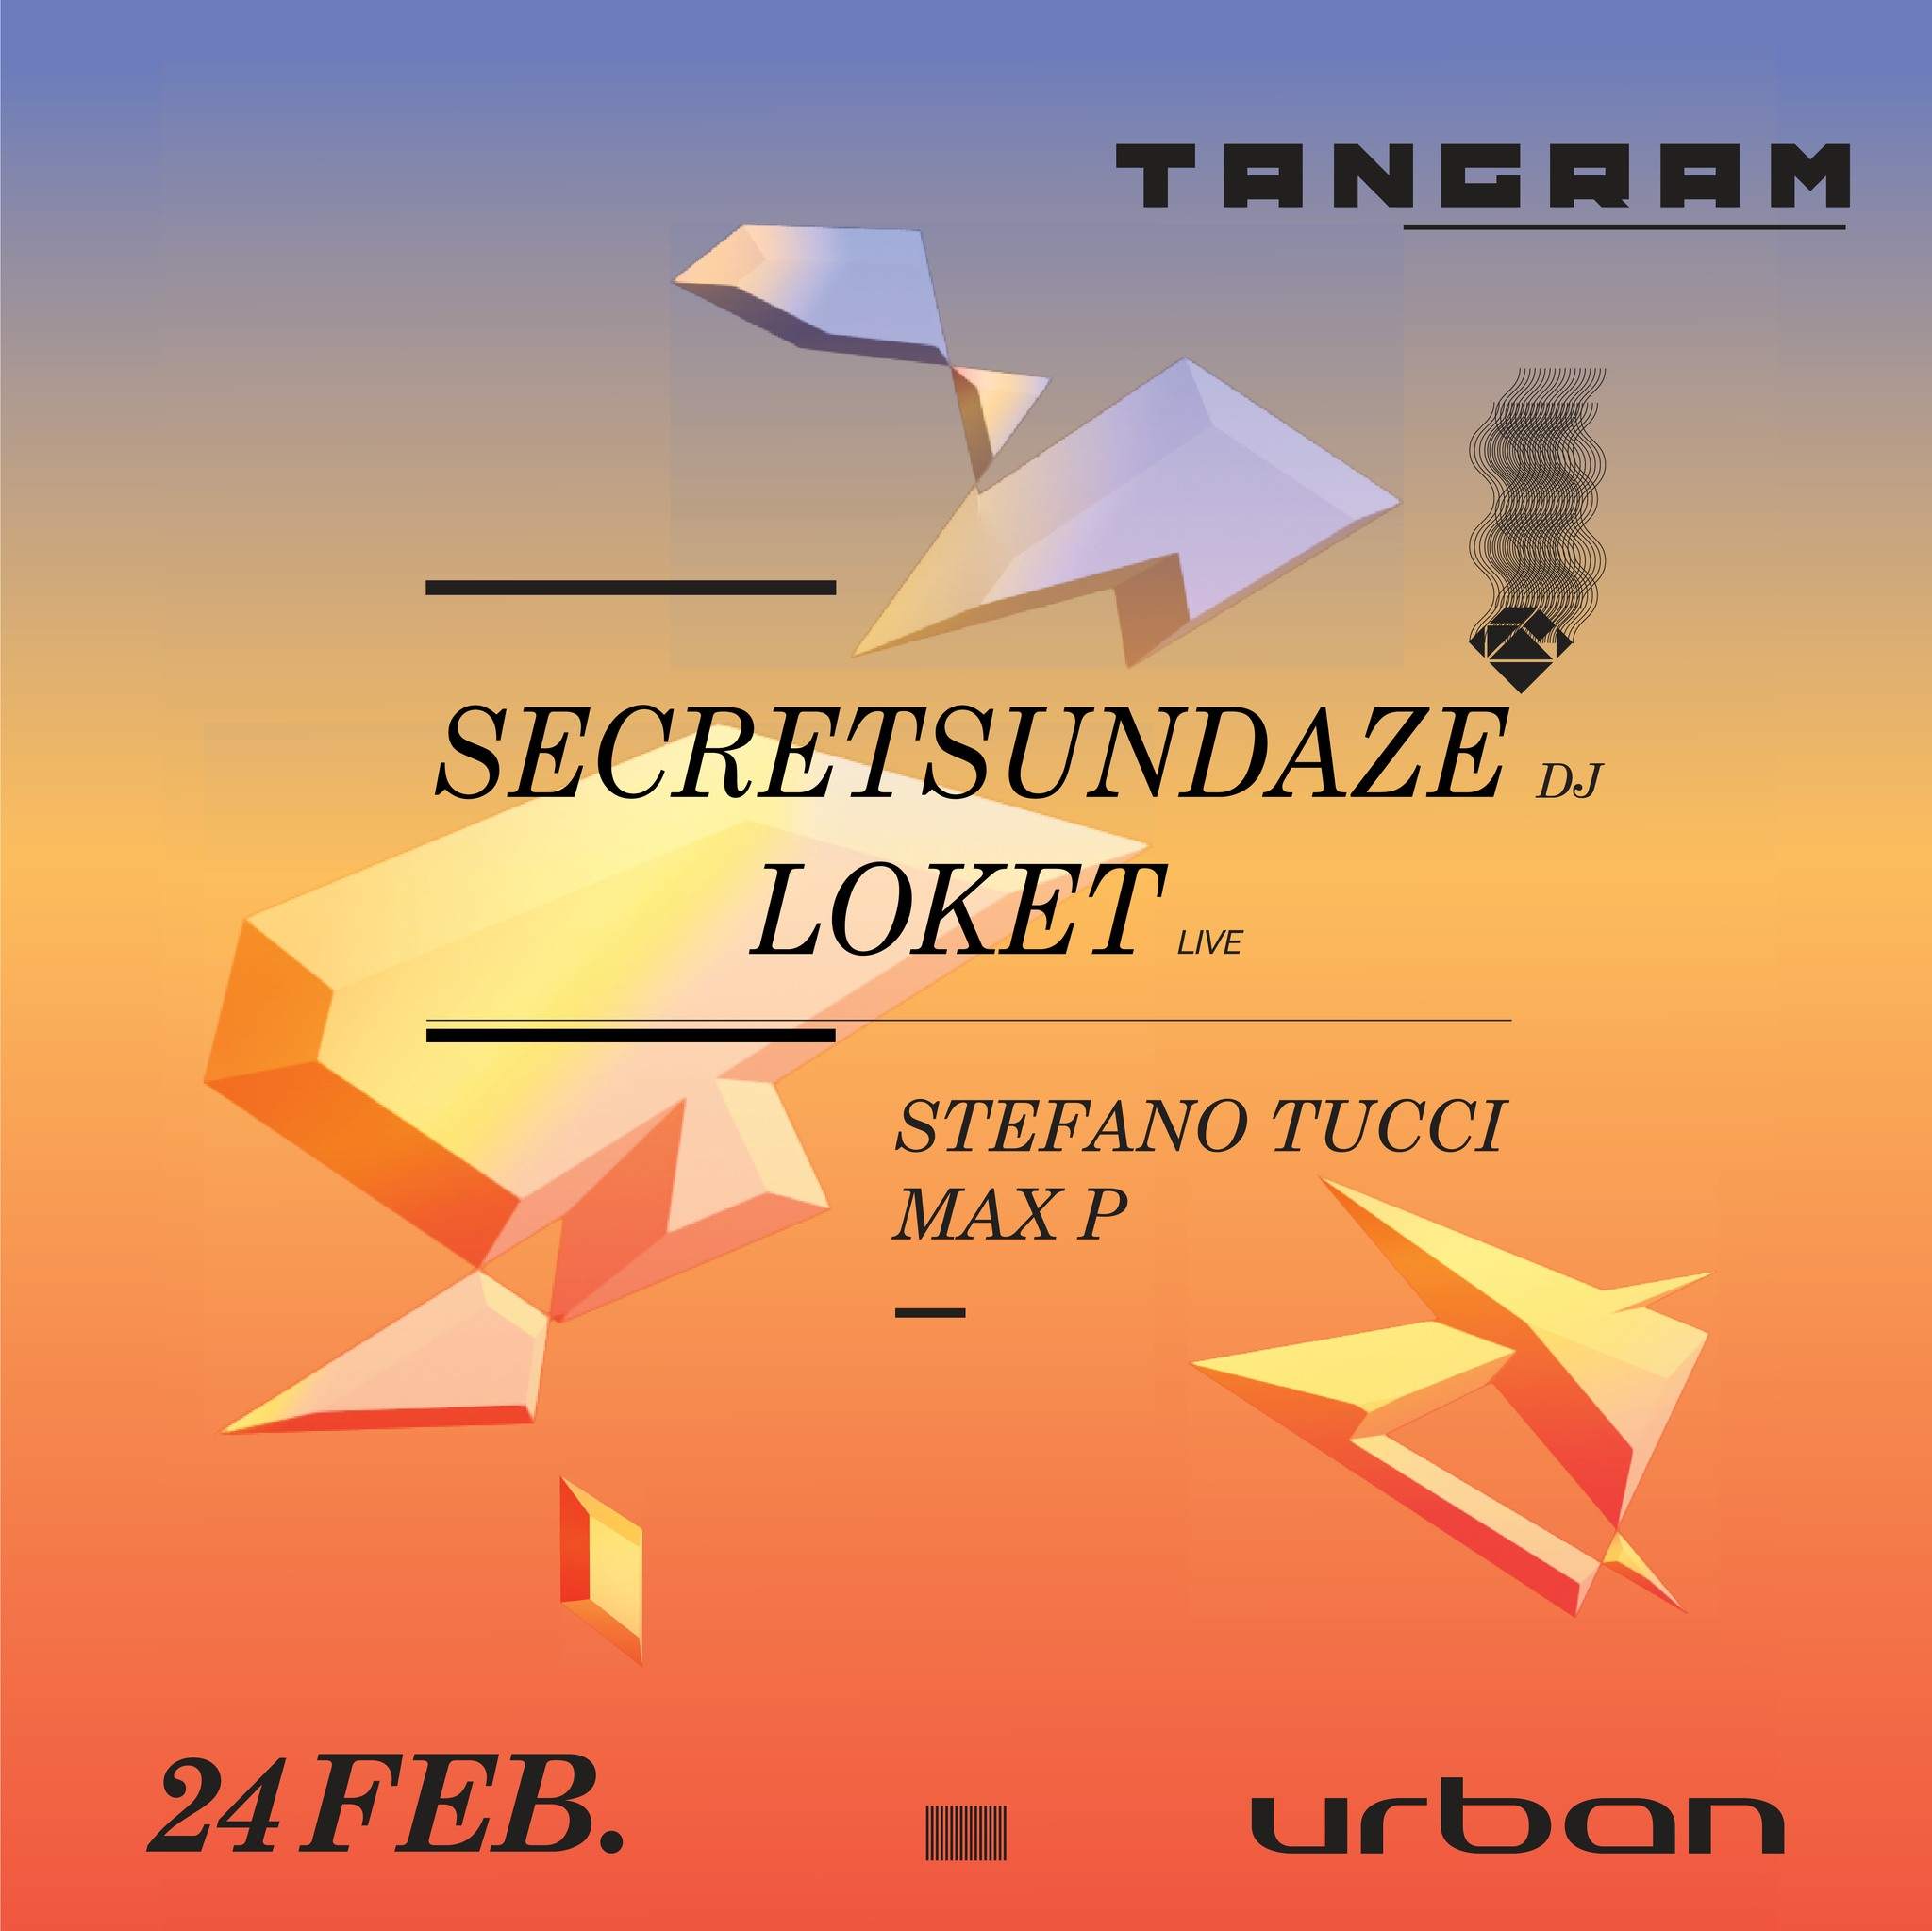 Tangram with Secretsundaze + LOKET - フライヤー表